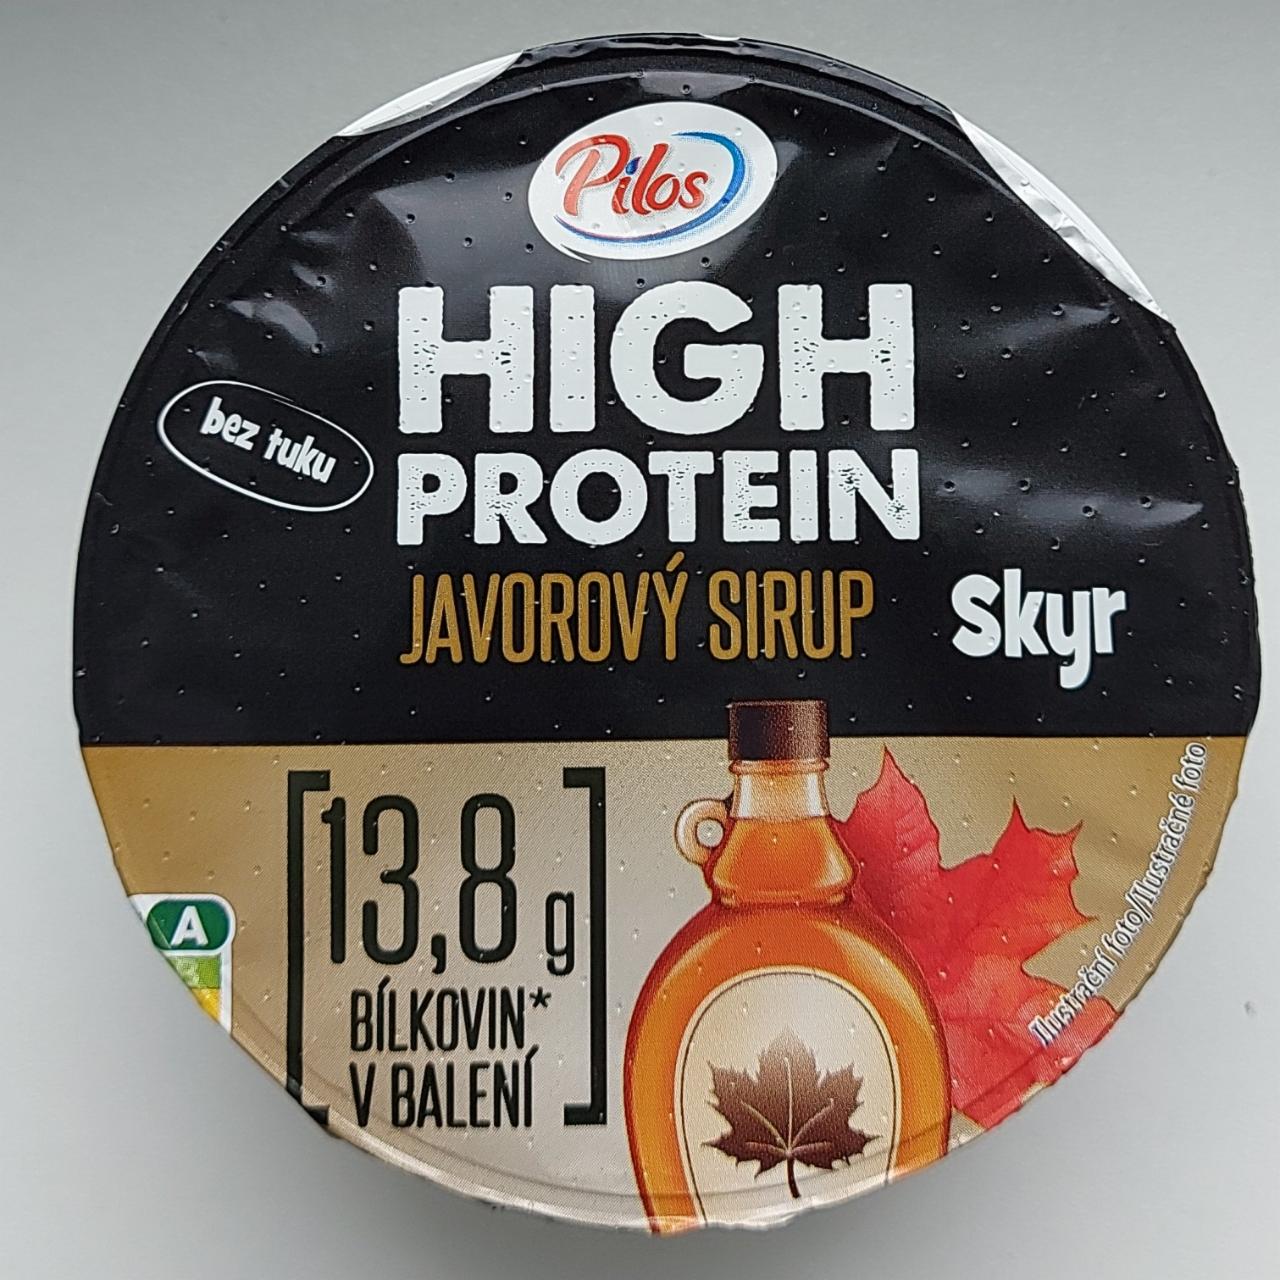 Fotografie - High protein javorový sirup skyr Pilos